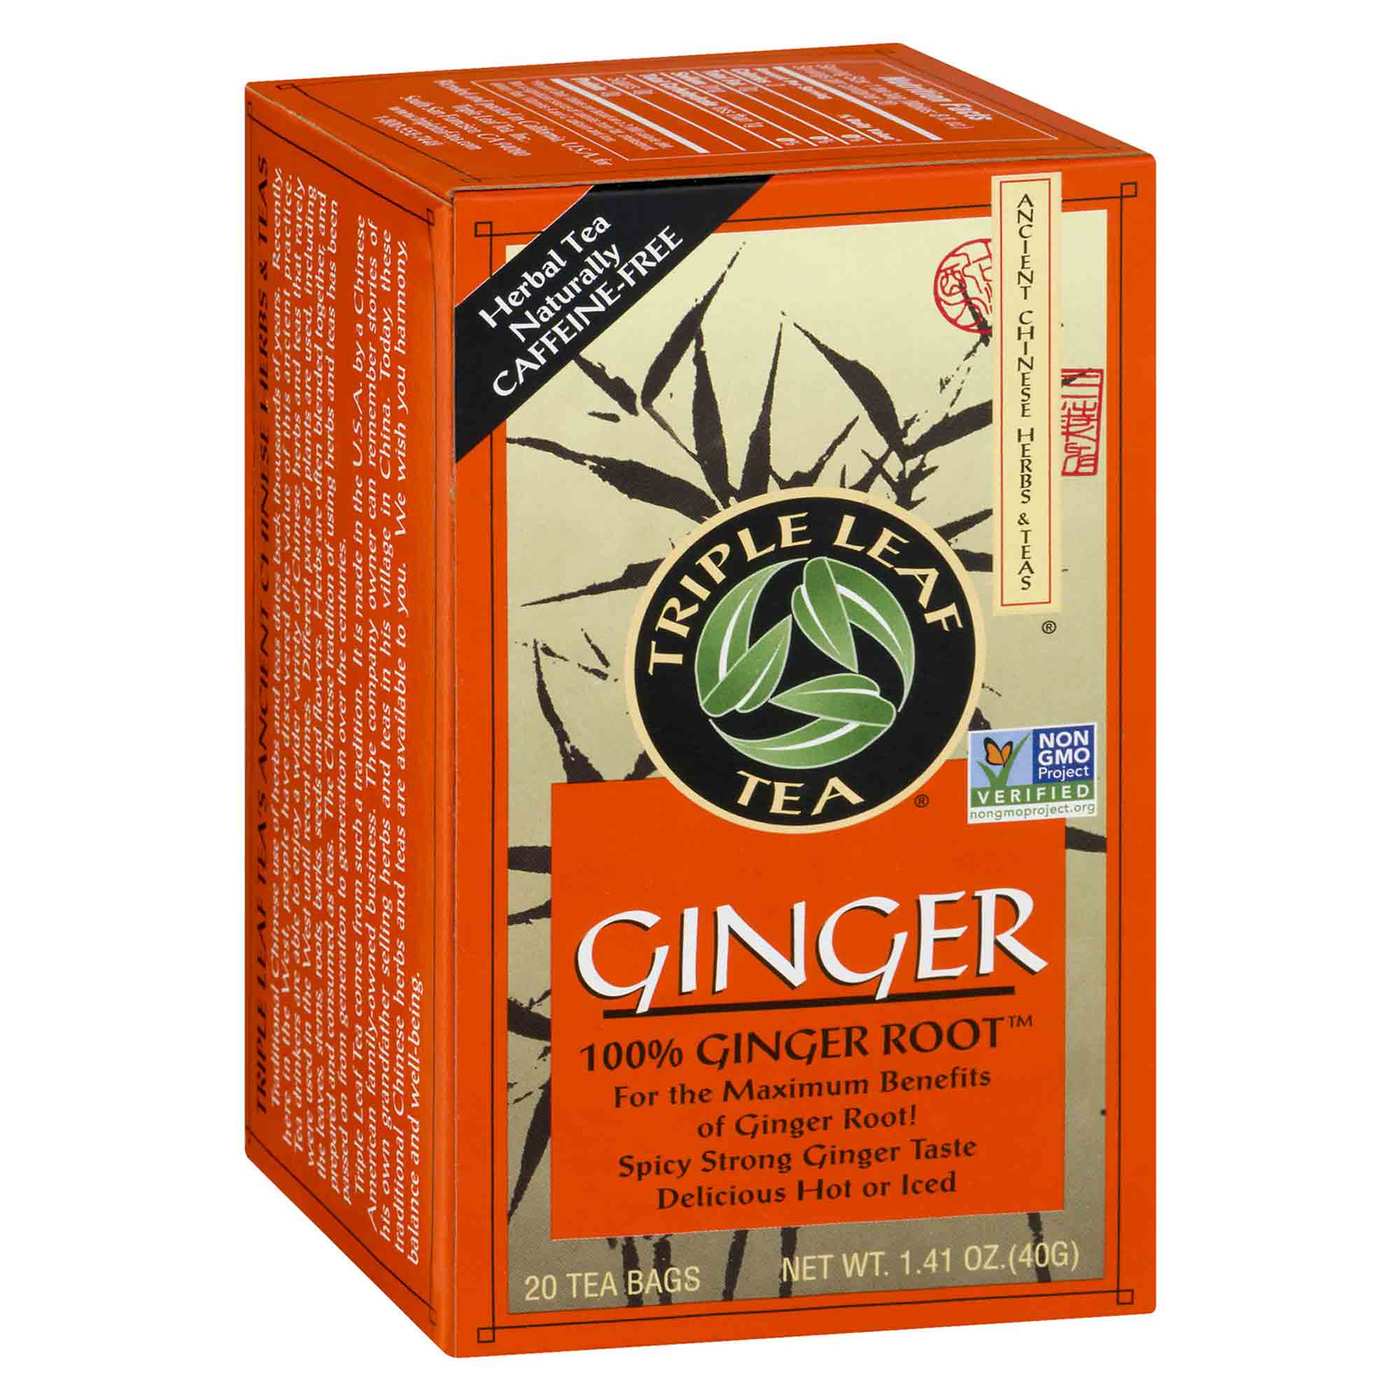 Triple Leaf Tea Ginger 20 tea bags eVitamins UK